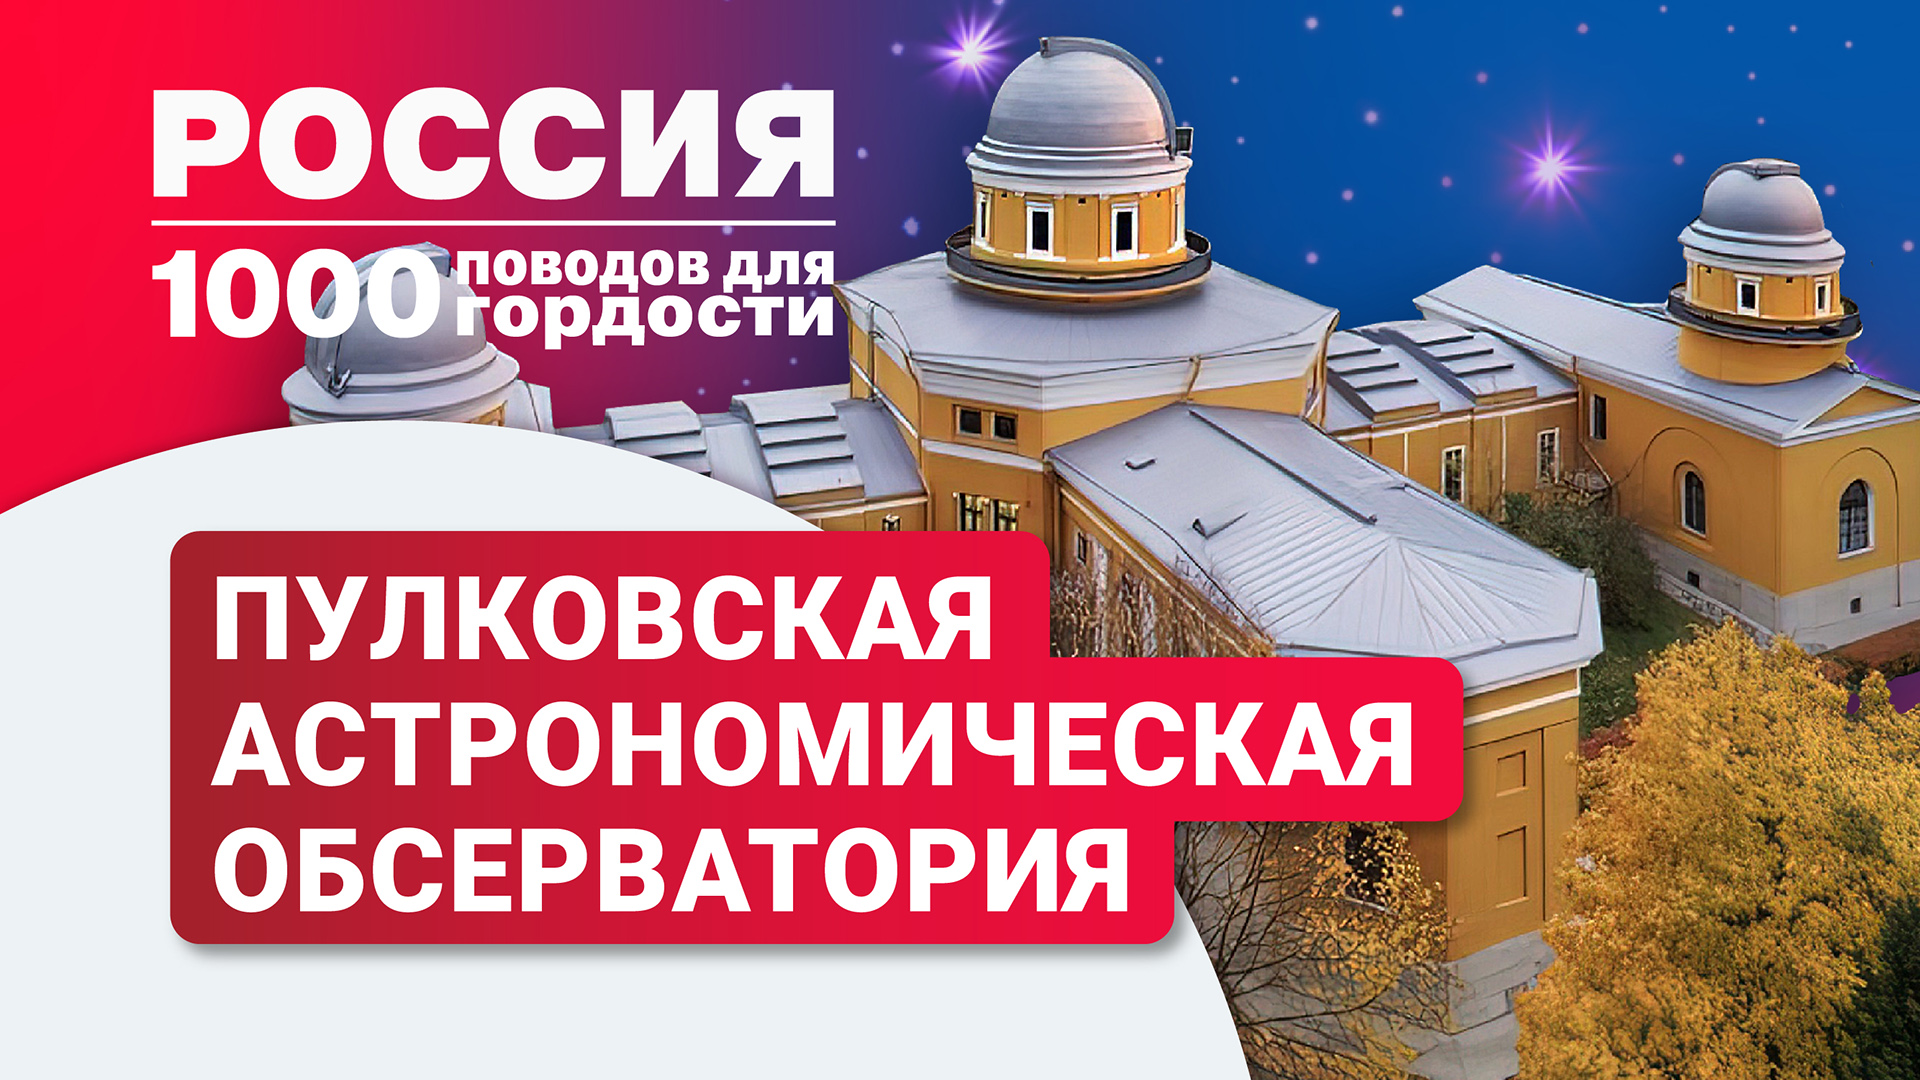 Пулковская астрономическая обсерватория